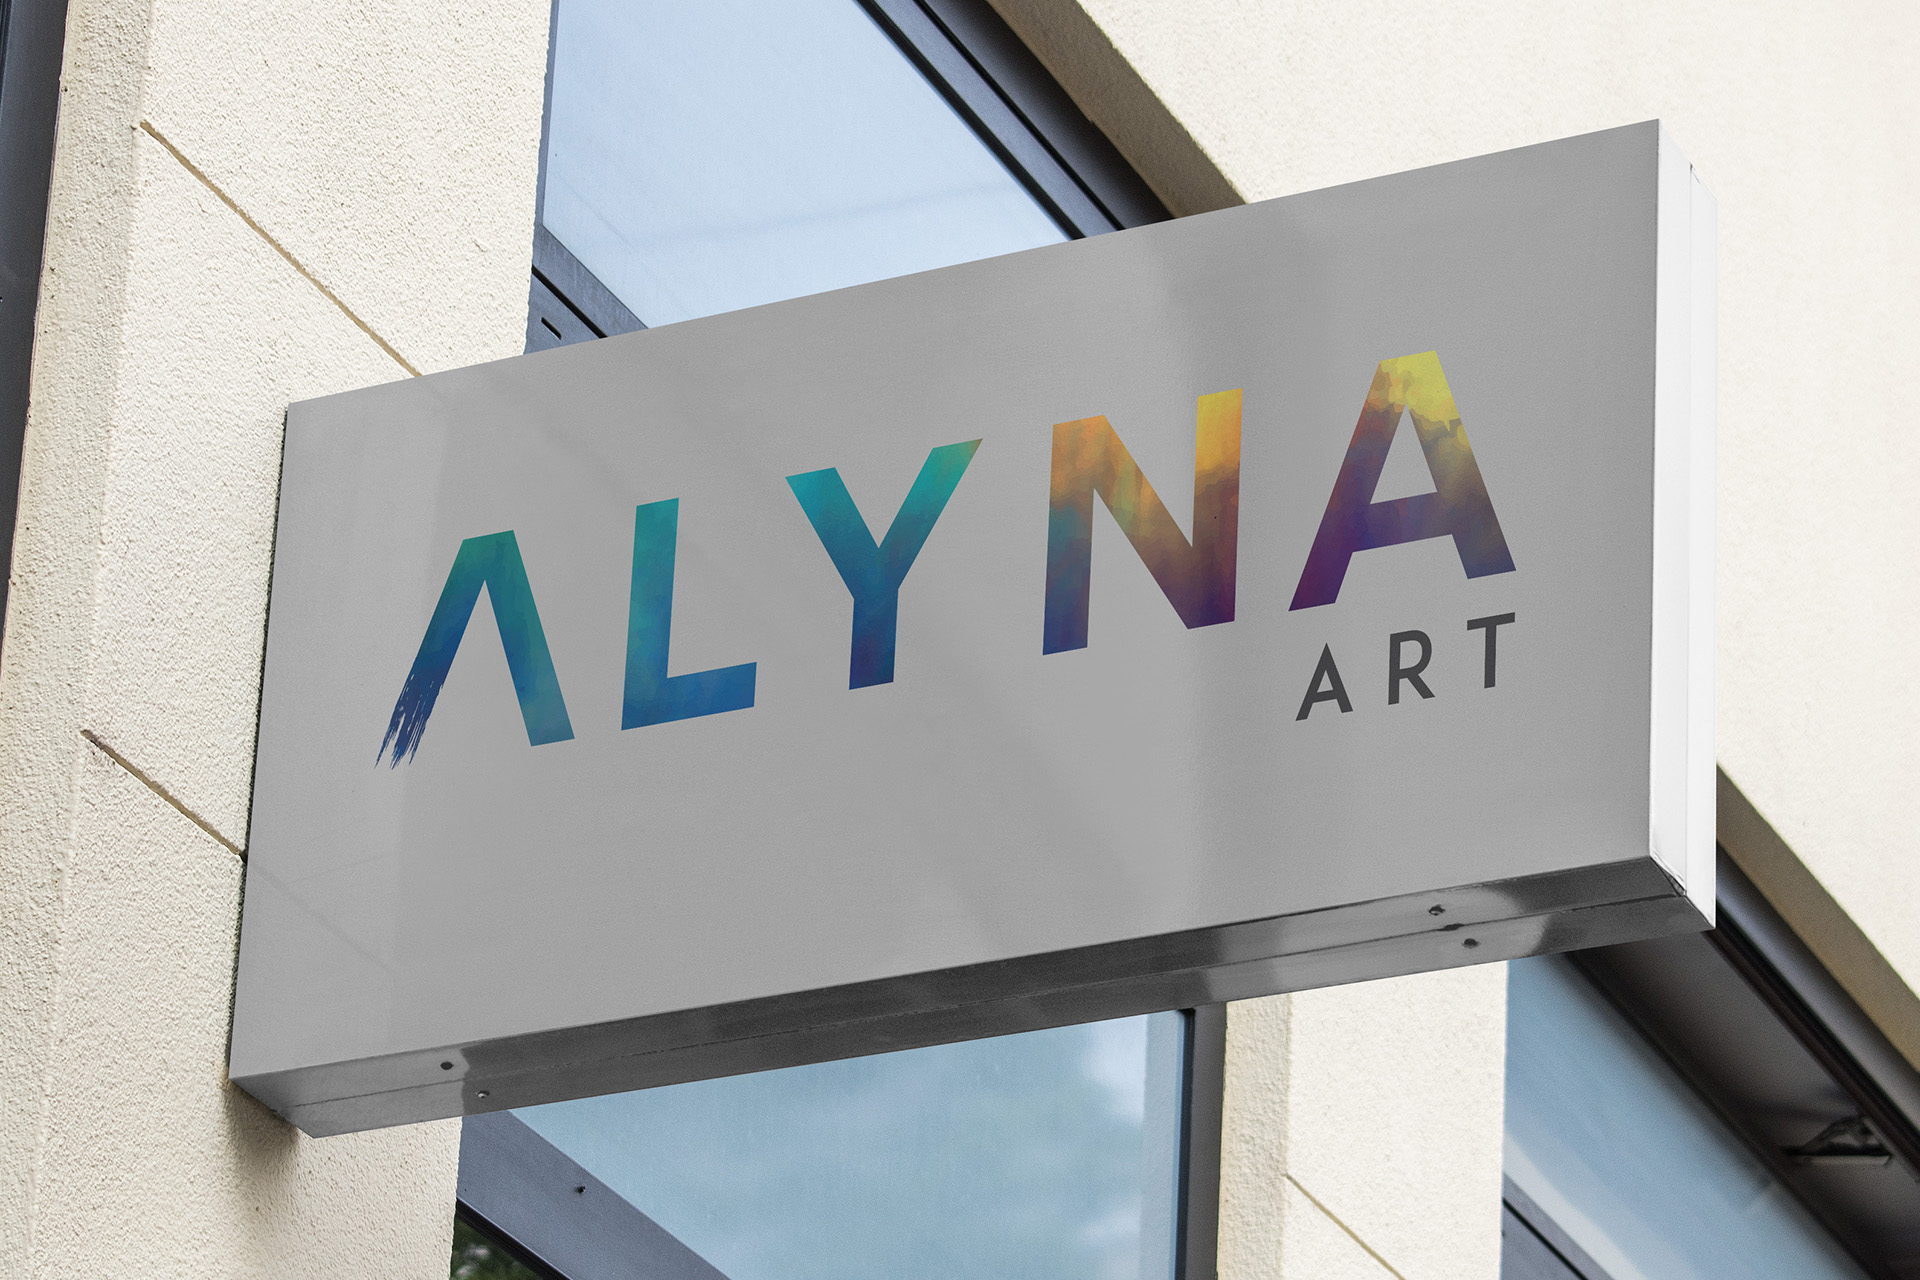 Alyna art signage design